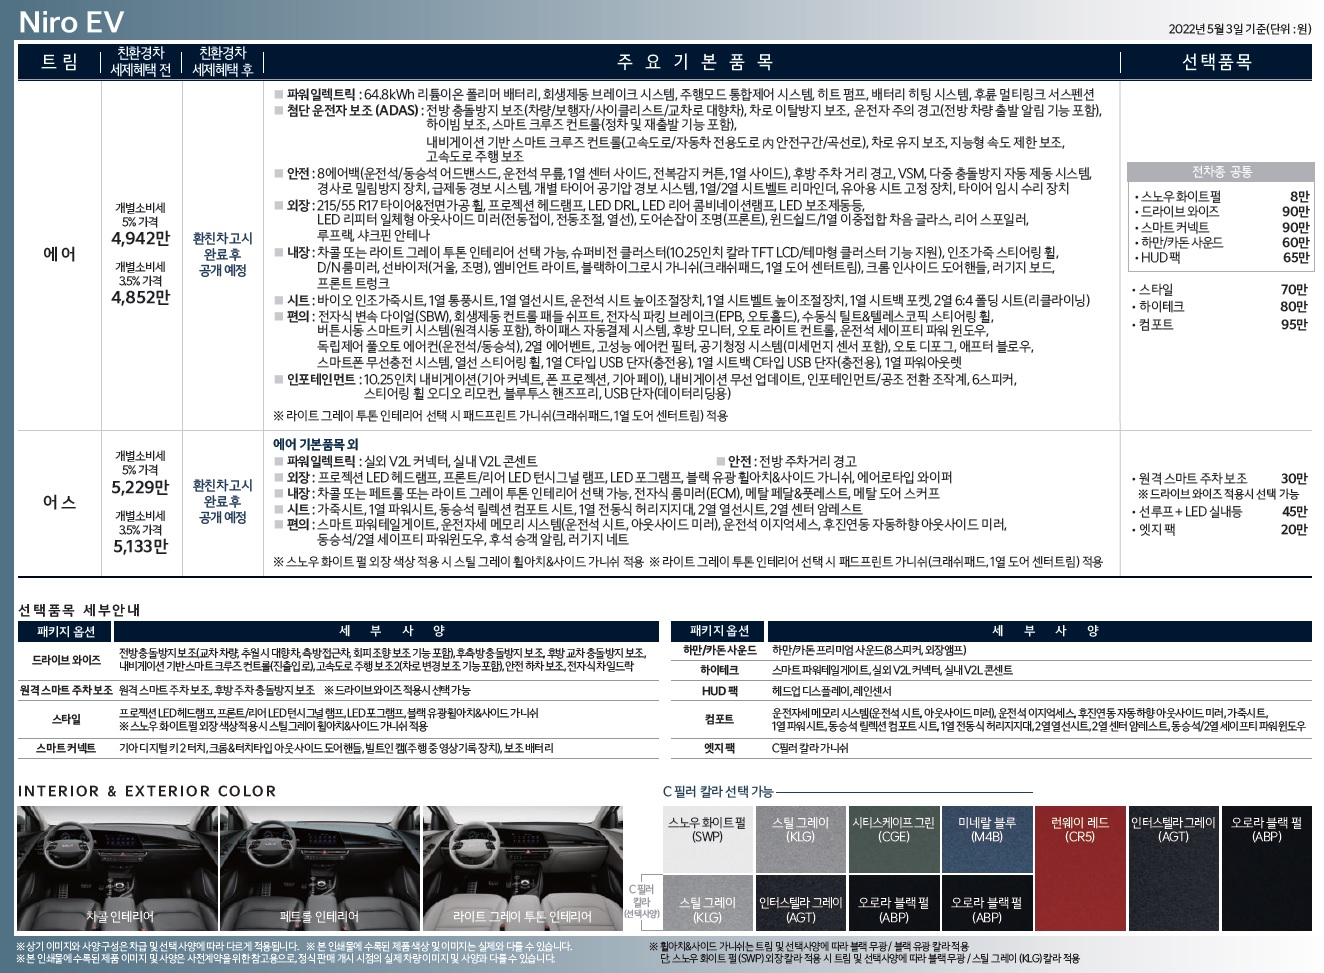 니로 EV 가격표 - 2022년 5월 (신형 사전계약) -2.jpg